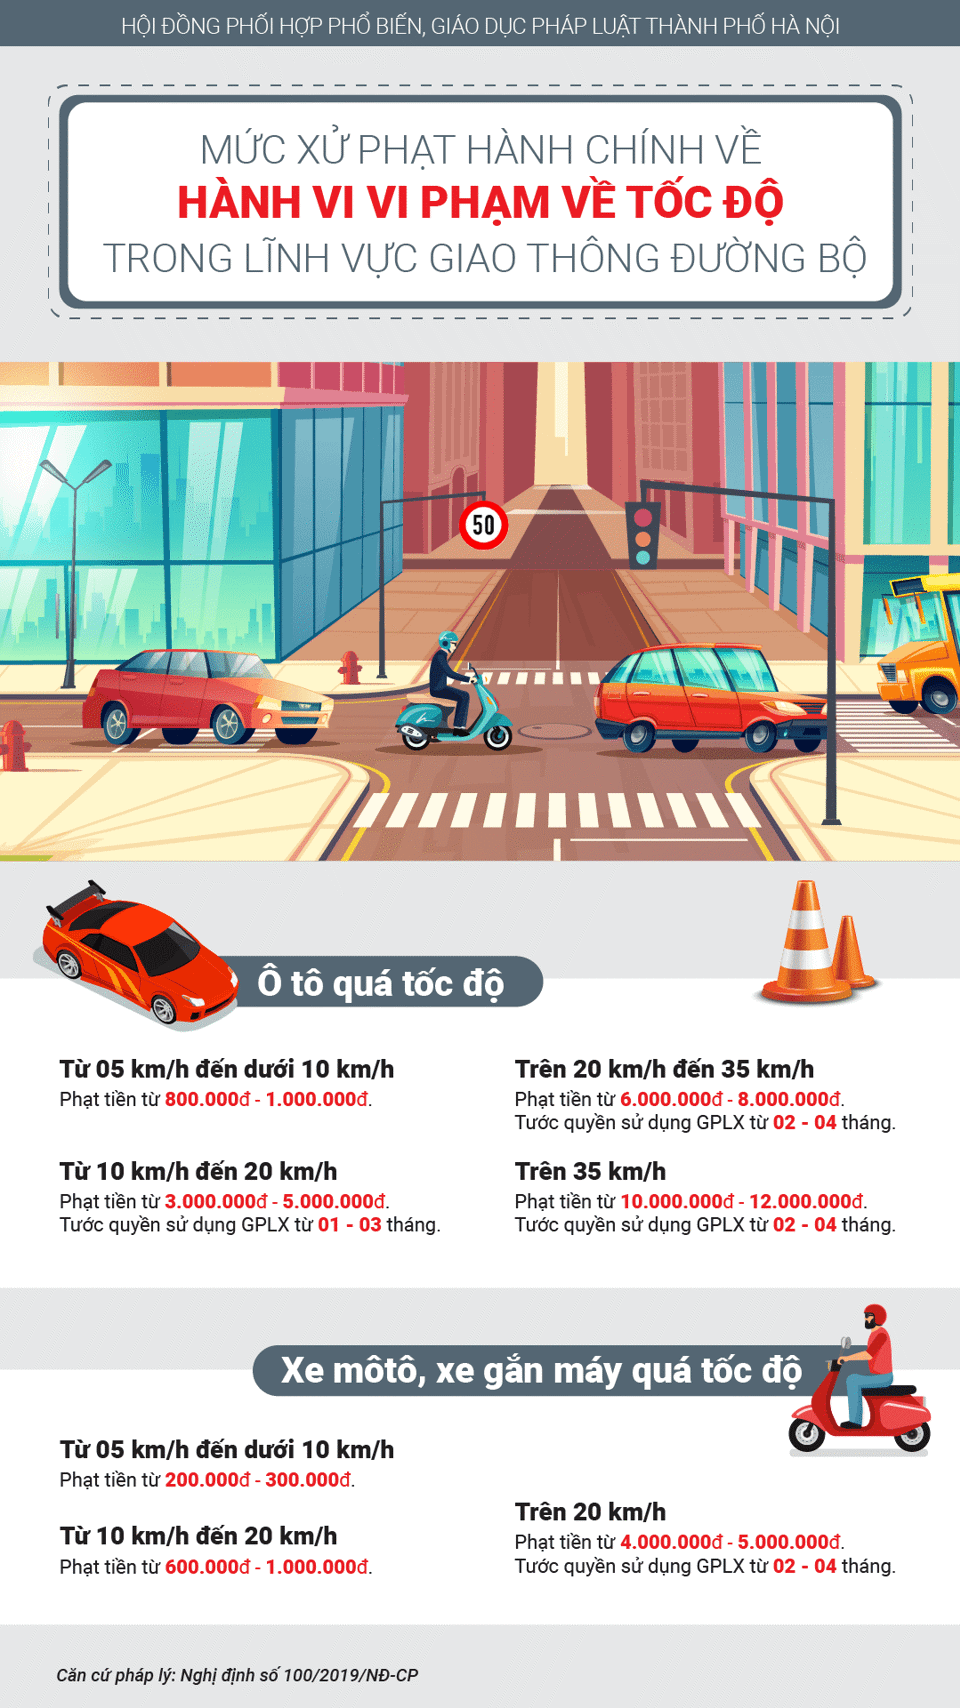 [Infographic] Vi phạm về tốc độ khi tham gia giao thông, mức phạt thế nào? - Ảnh 1